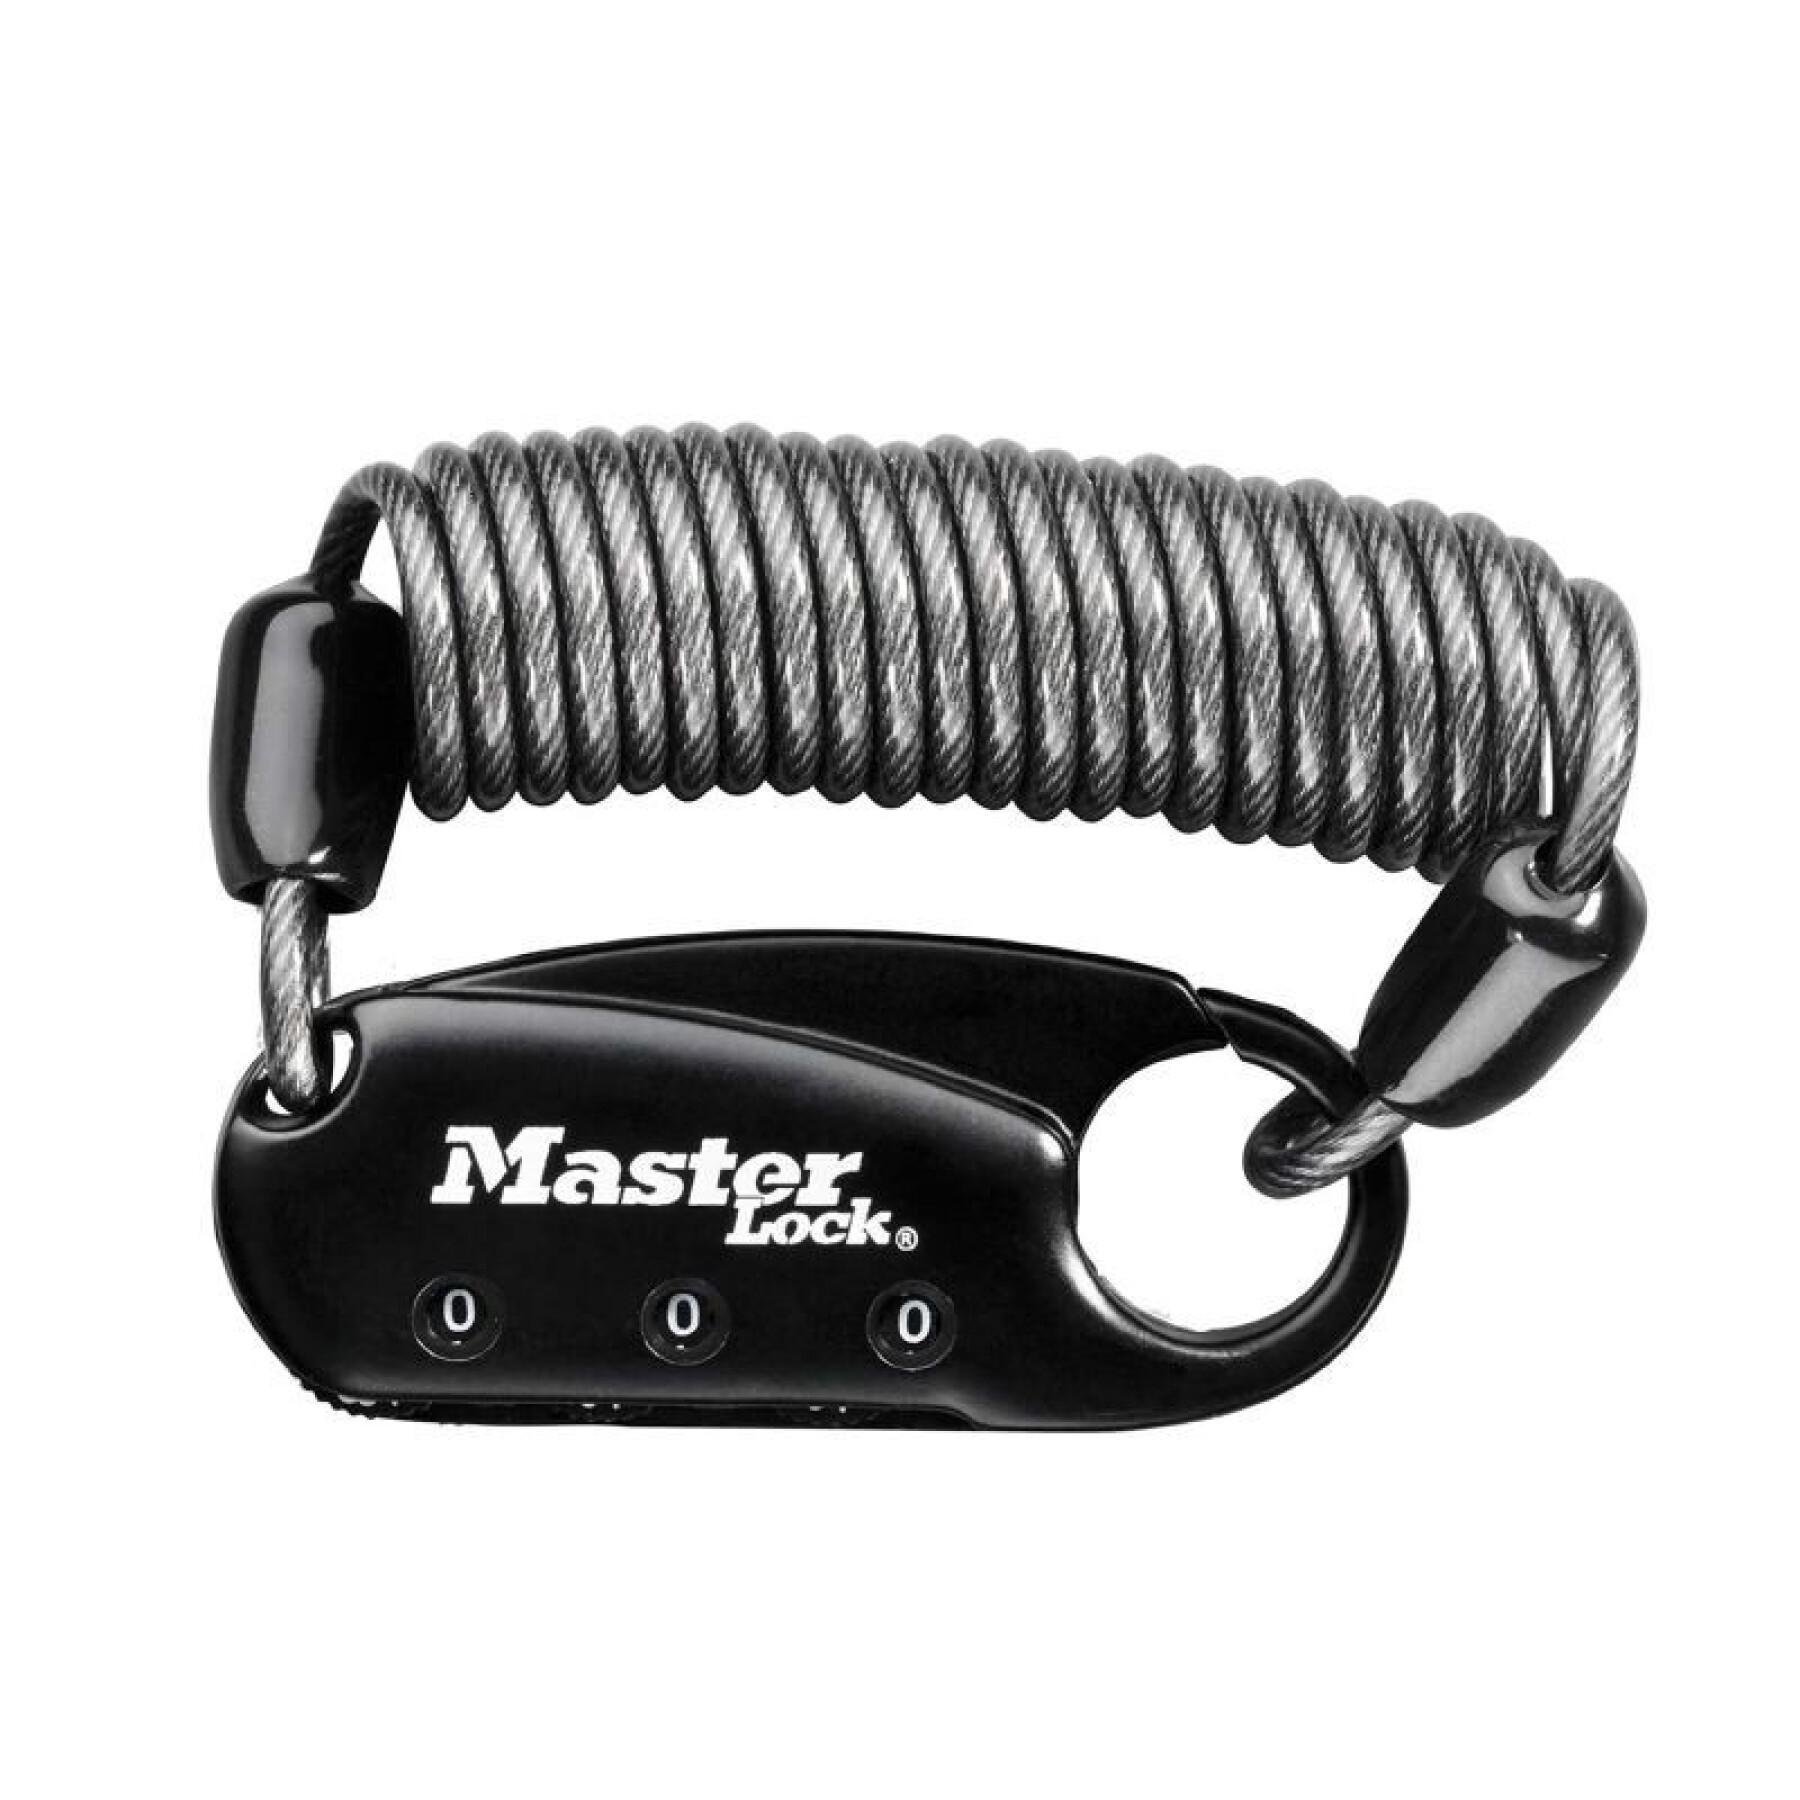 Kabelschloss mit Zahlenschloss für Helmtasche Master Lock